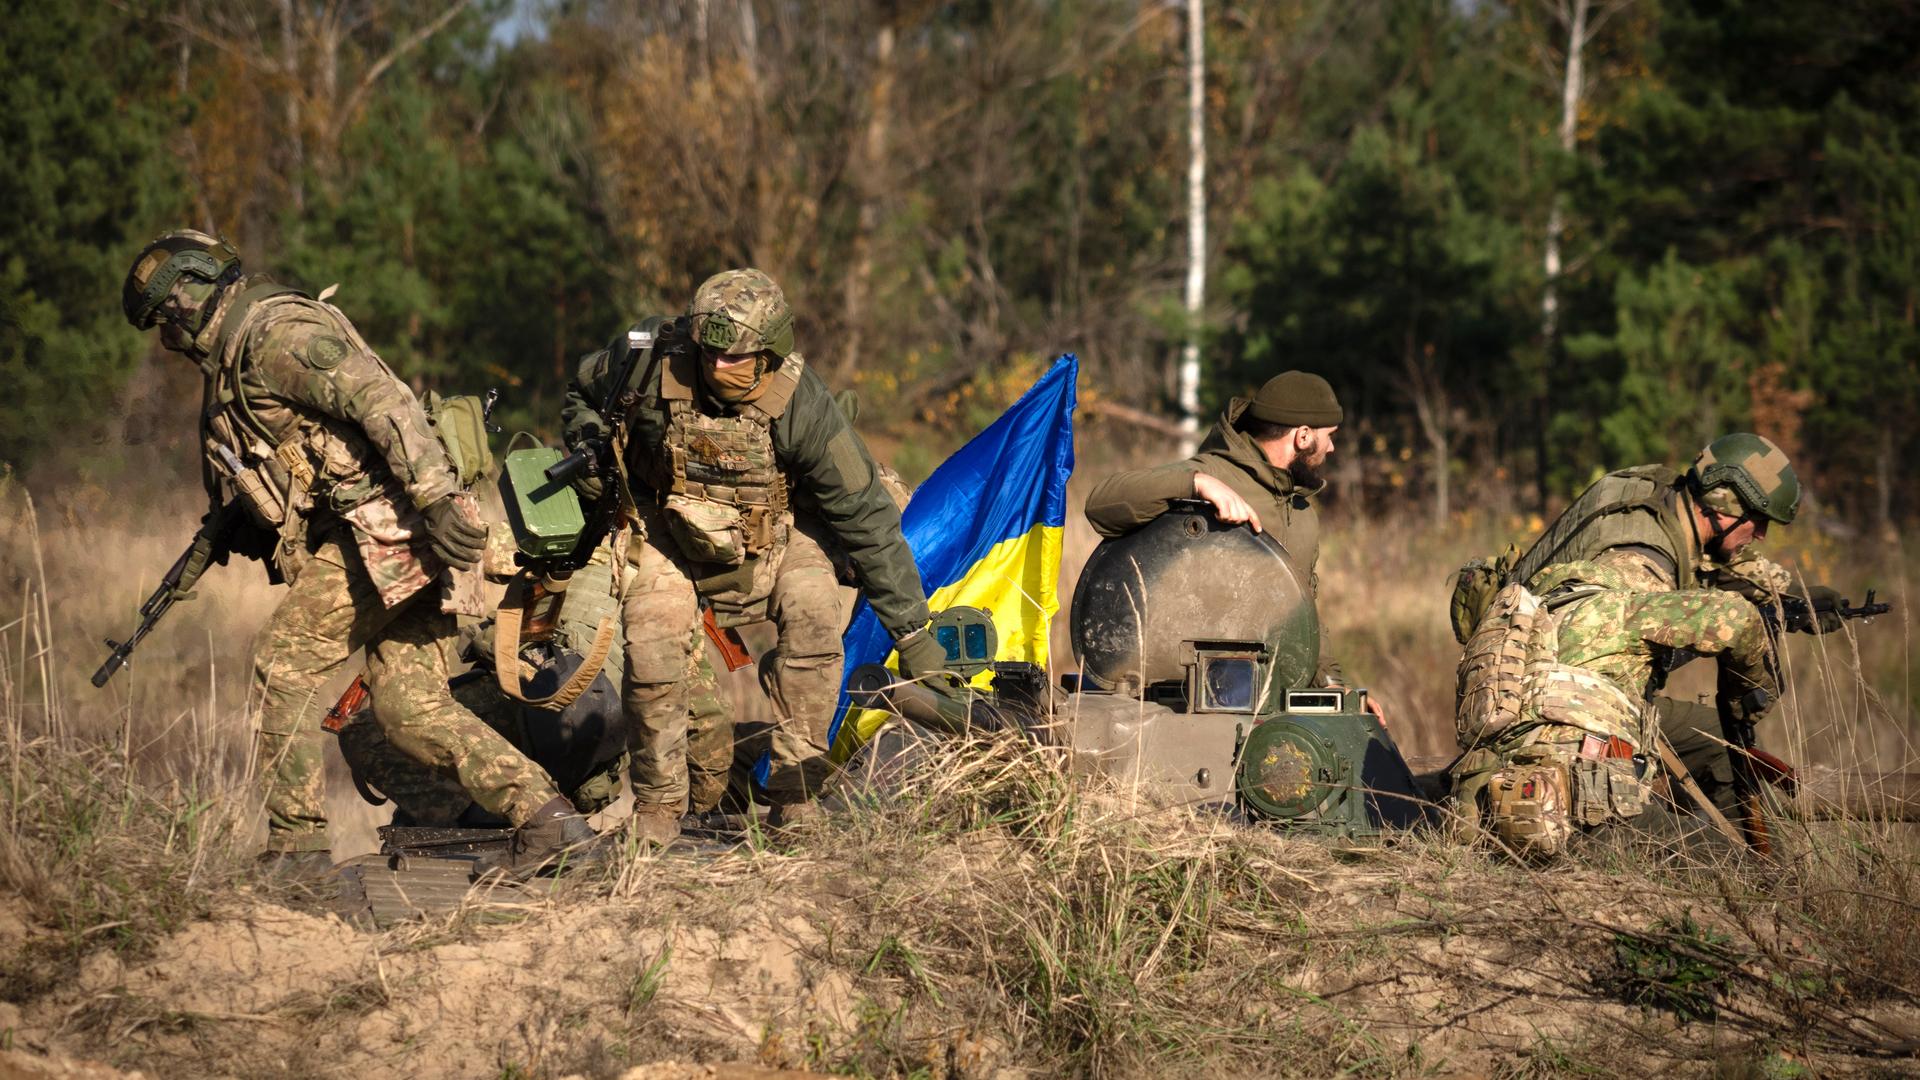 Soldaten der 1. Brigade der ukrainischen Nationalgarde Bureviy (Hurricane) üben während der Gefechtsausbildung auf einem Truppenübungsplatz im Norden der Ukraine. In der Mitte eine ukrainische Nationalflagge.